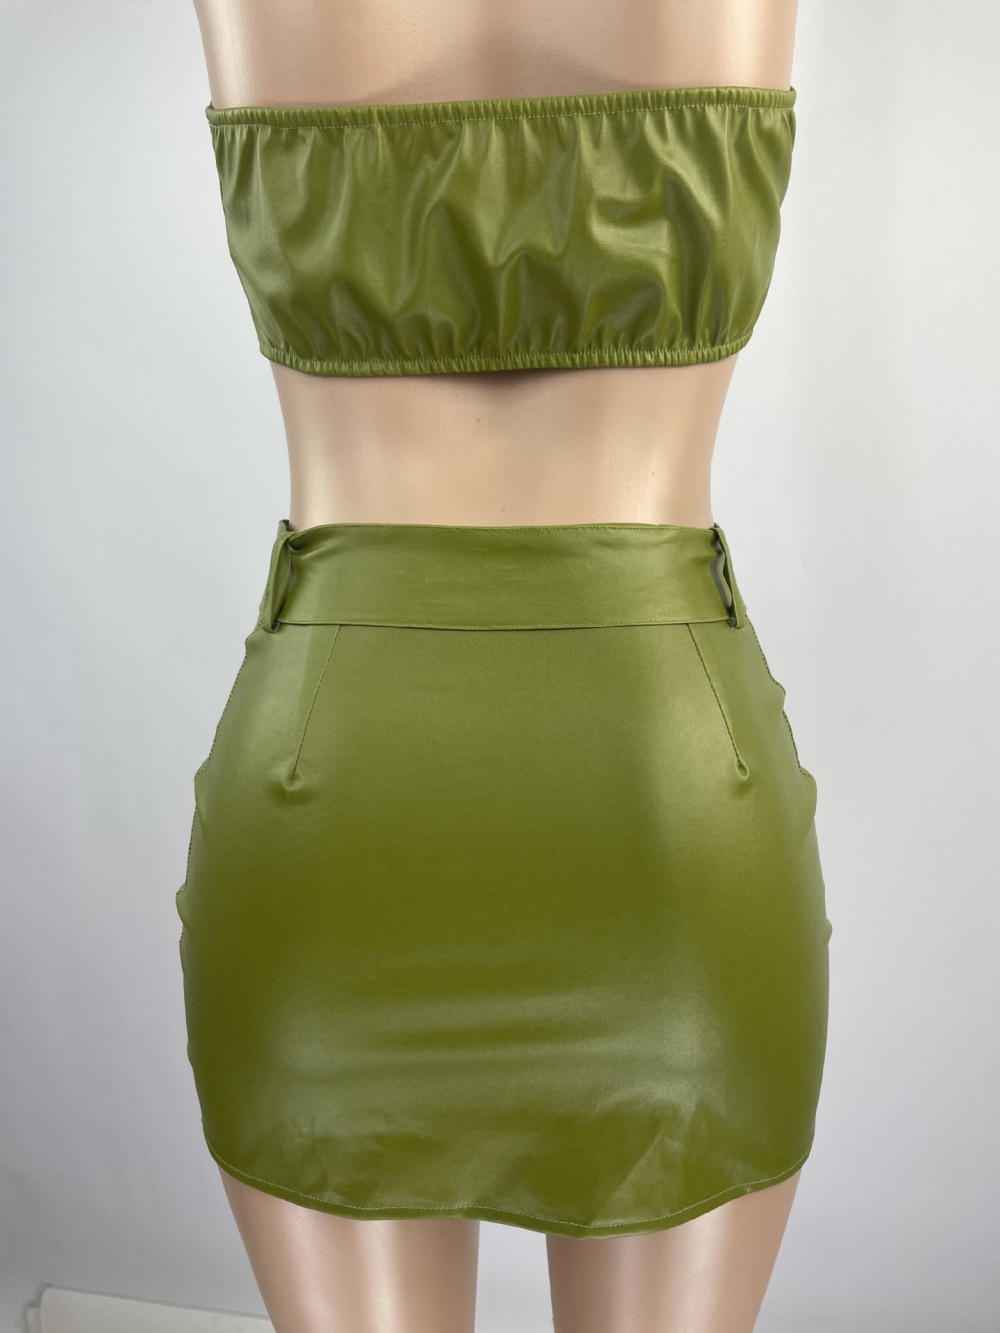 Navel belt Casual skirt 2pcs set for women